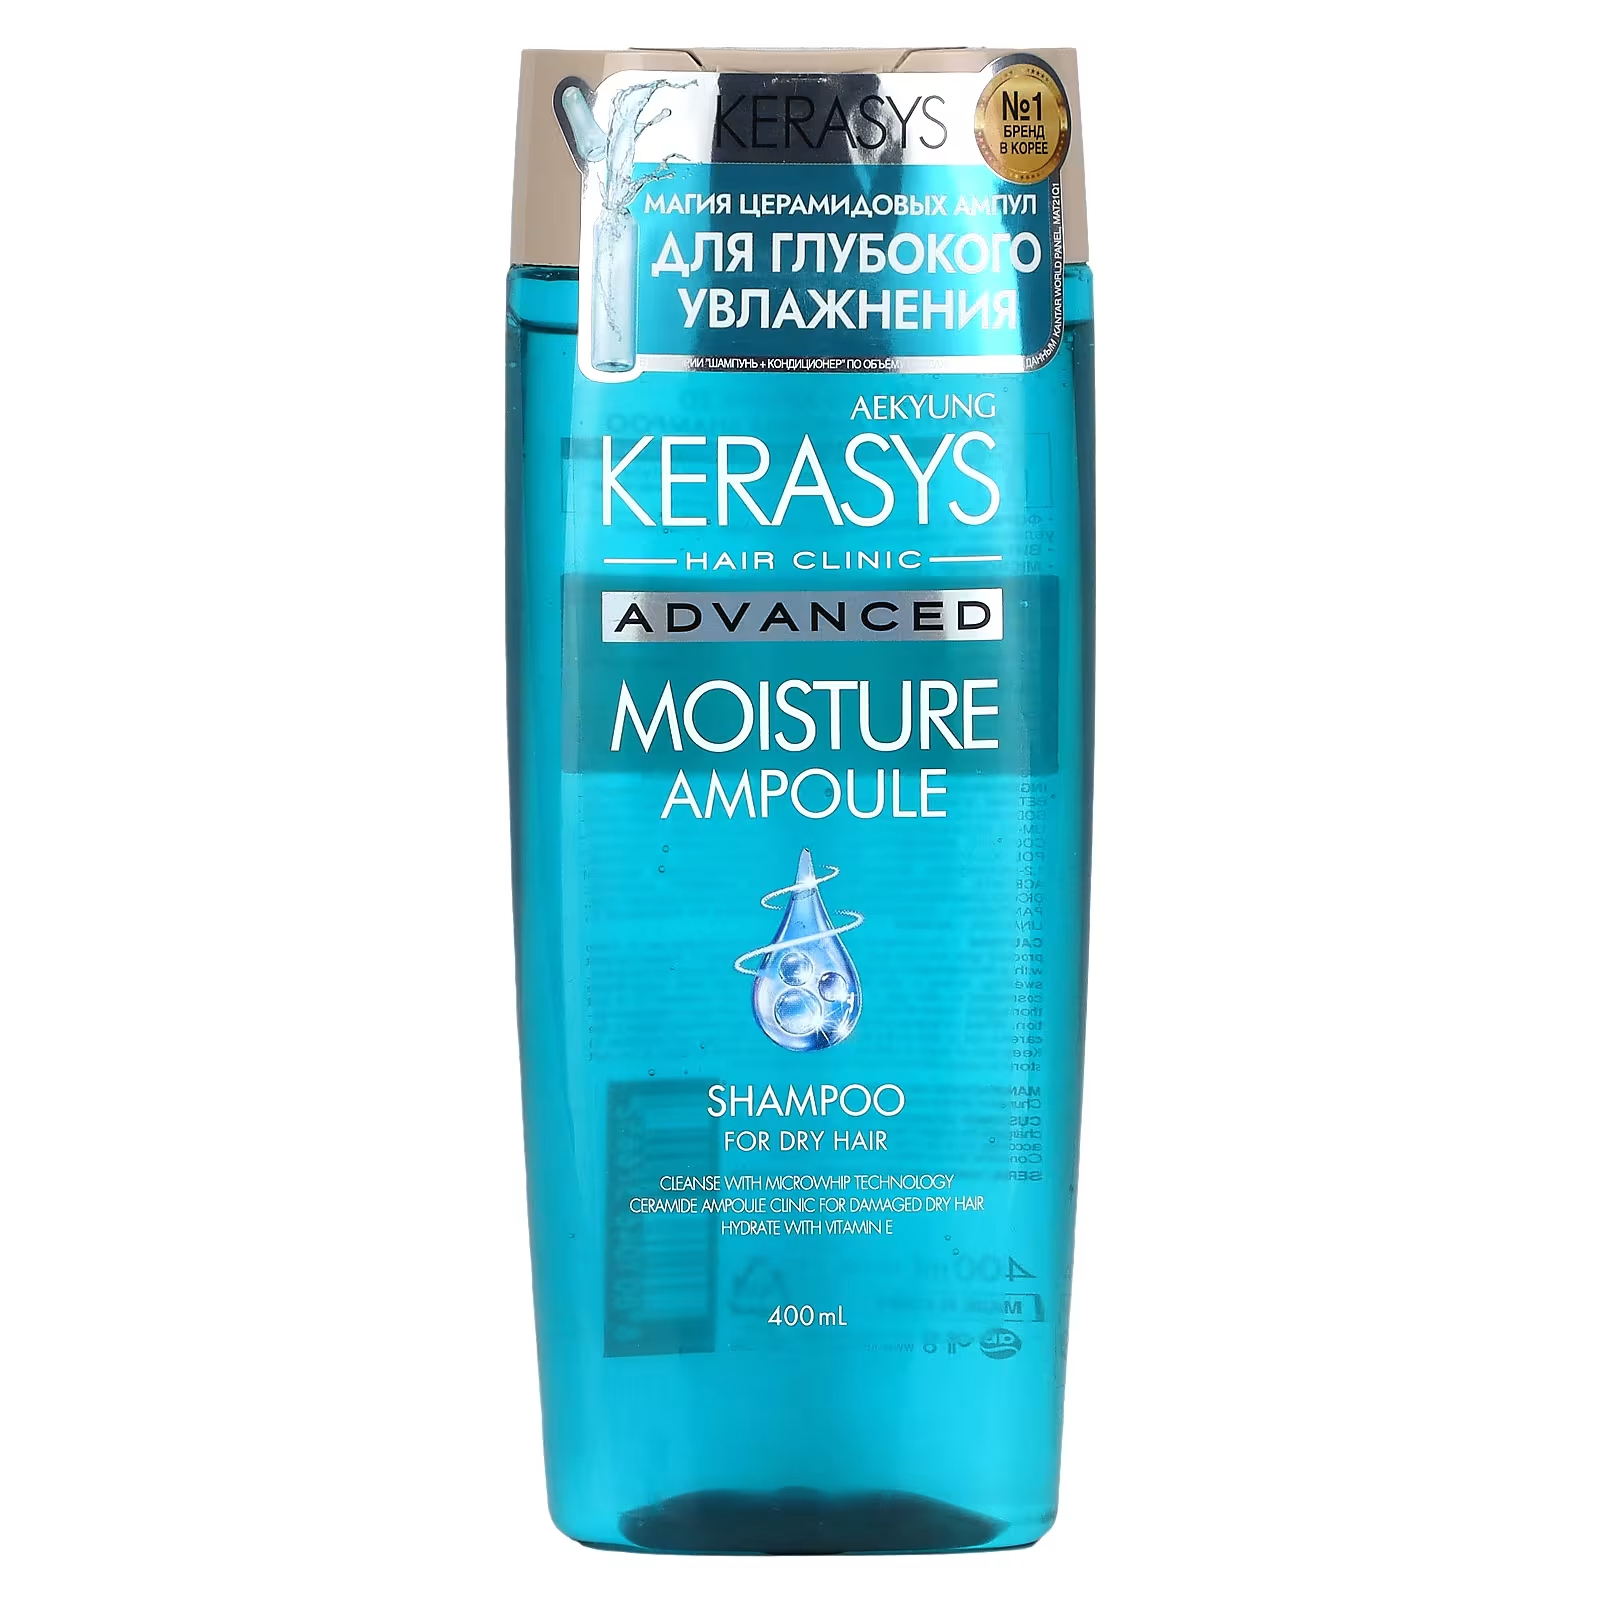 Шампунь Kerasys Advanced Moisture Ampoule для сухих волос, 400 мл набор для сухих и поврежденных волос